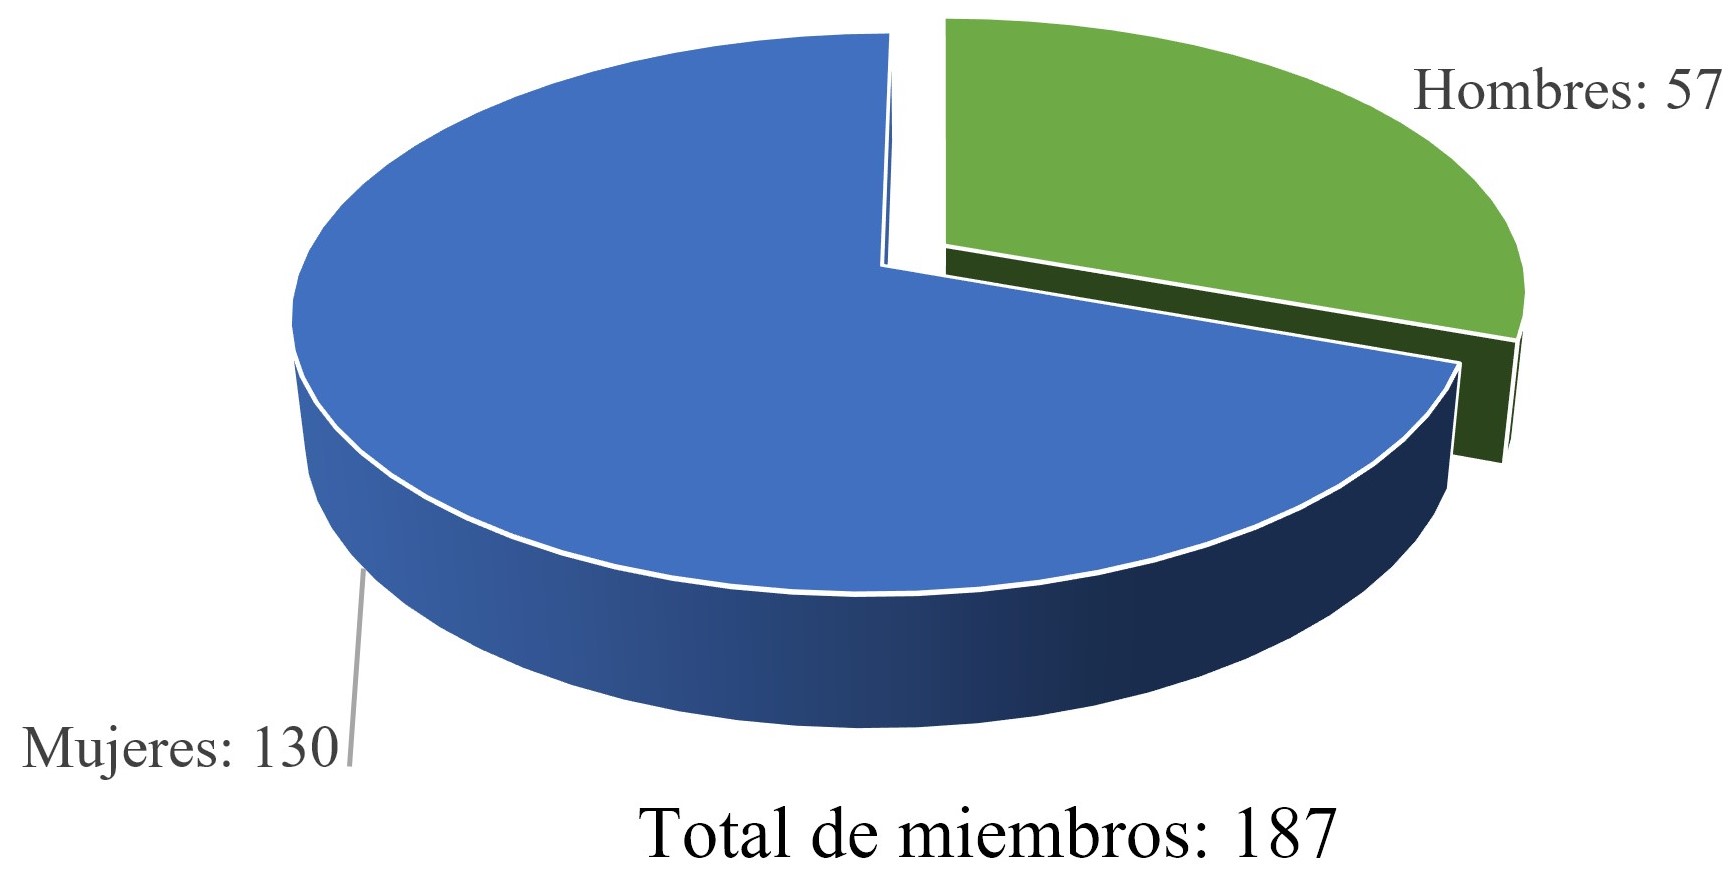 Orígenes de los adventistas en Bucaramanga, Colombia 1928-1946. Conversión  y hábitos de santidad | Historia y Espacio